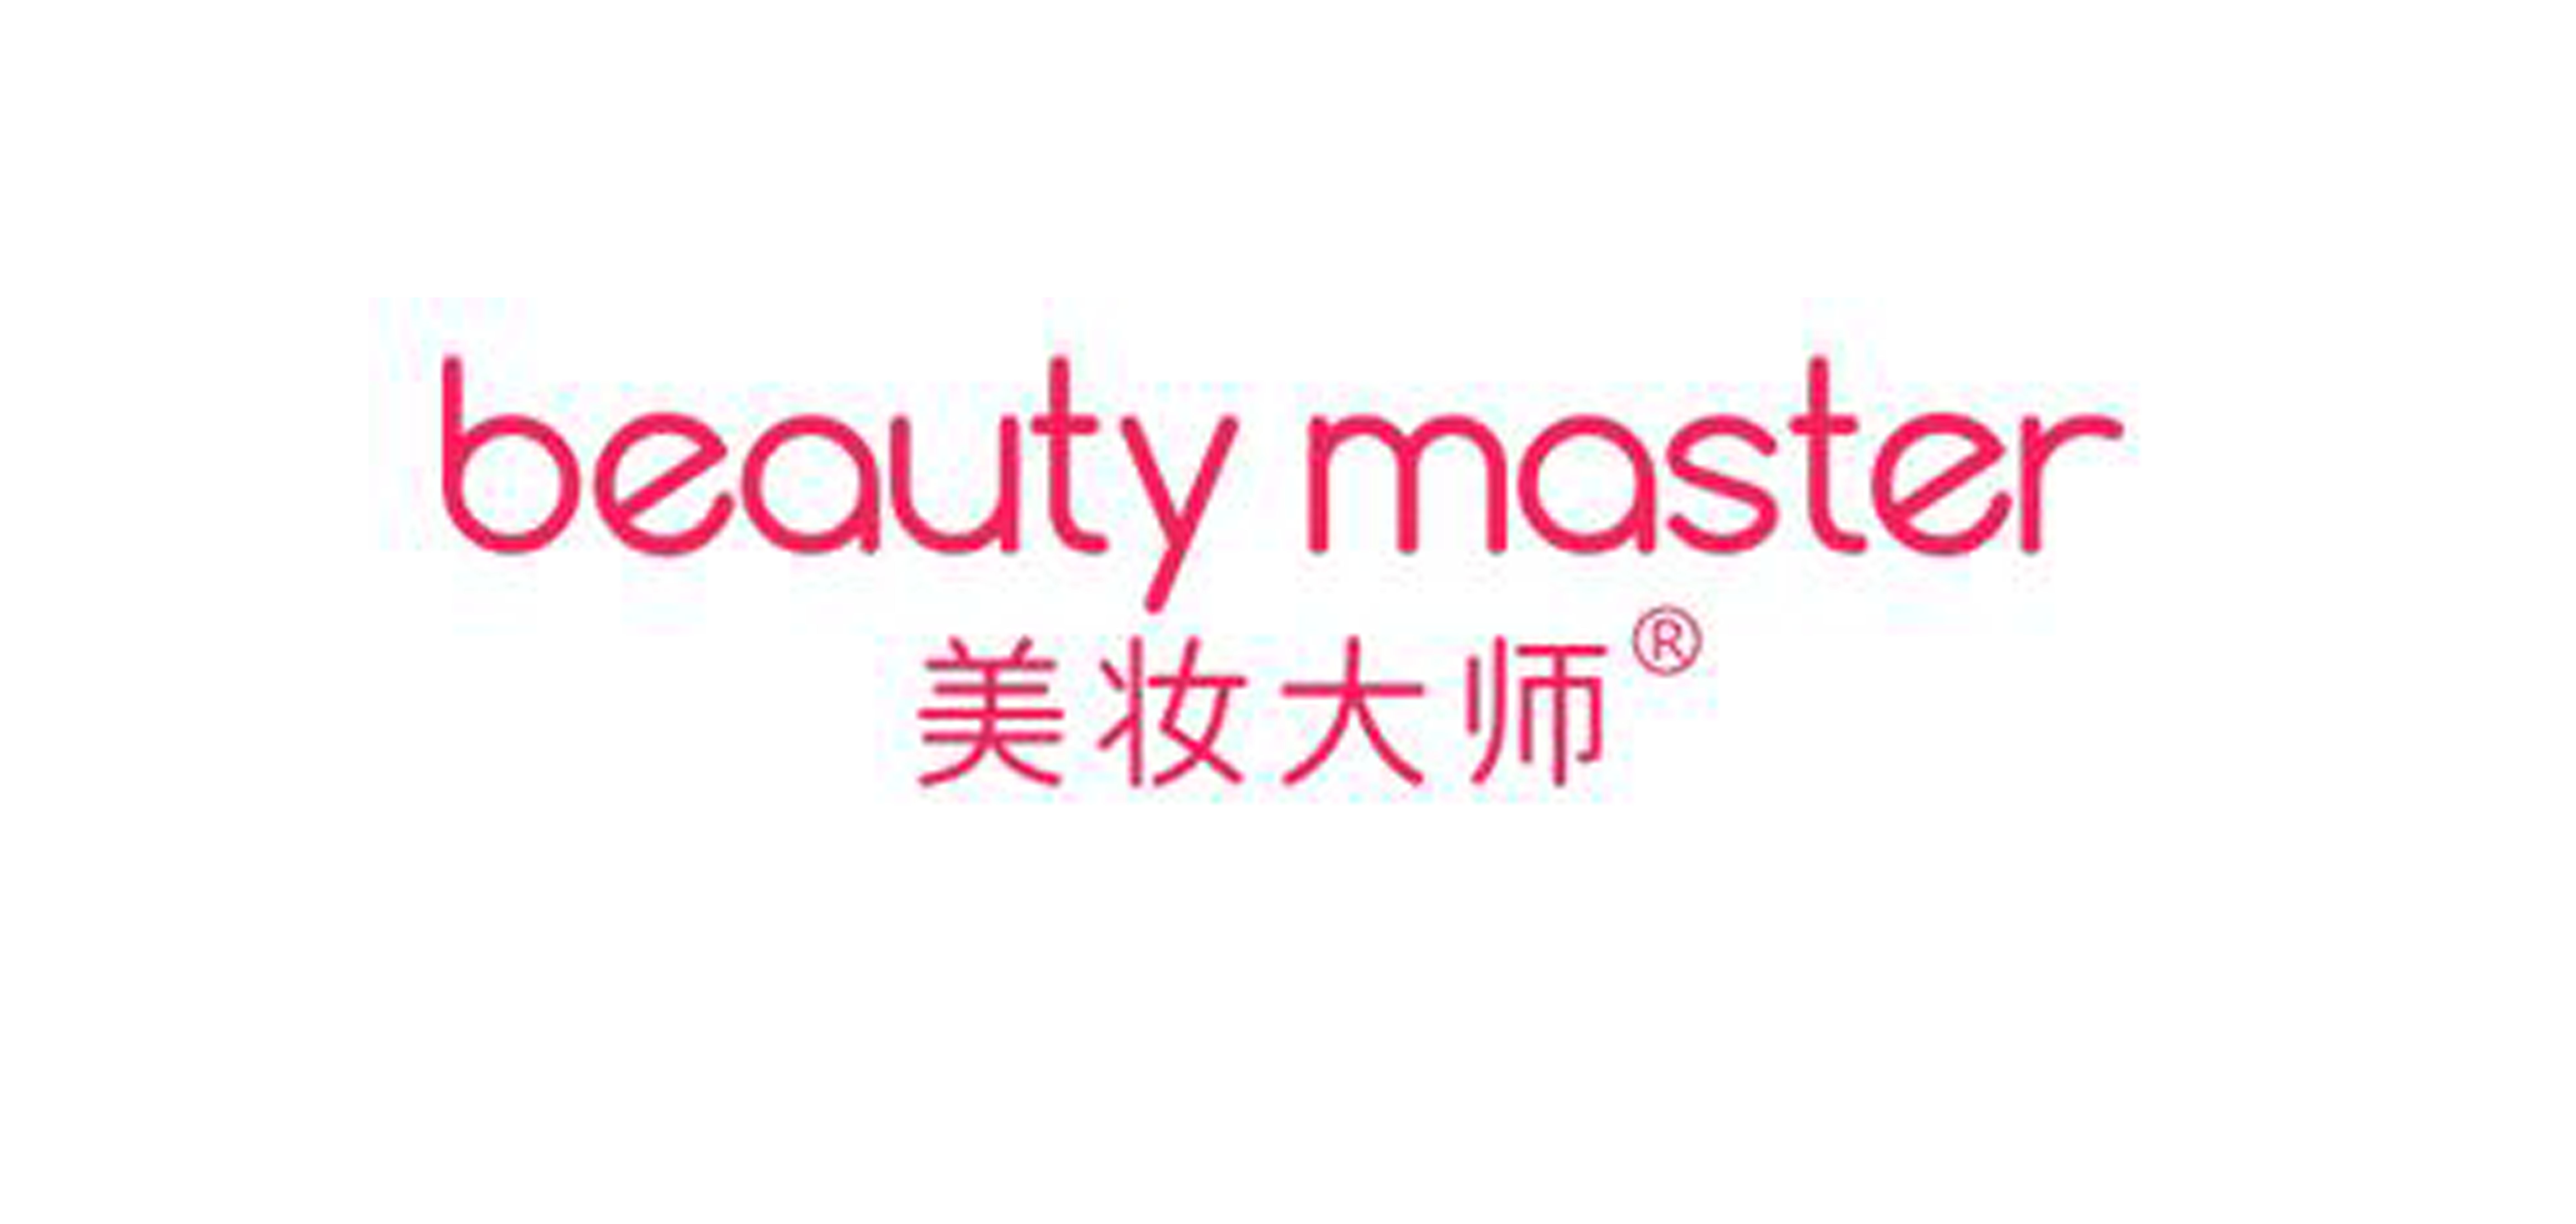 beauty master是什么牌子_美妆大师品牌怎么样?